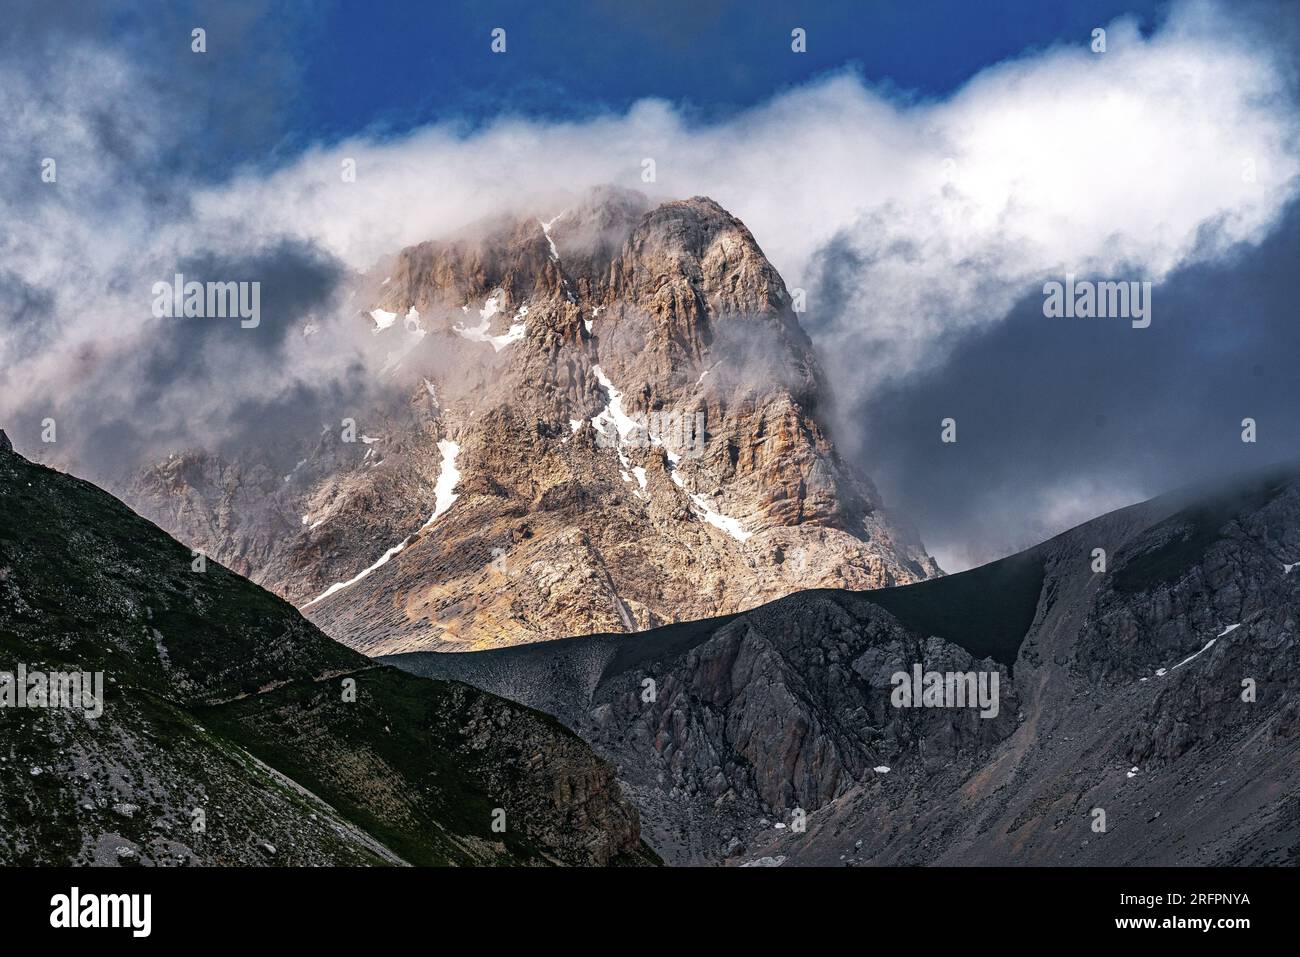 Juegos de luces y nubes en el Corno Grande, la cima de los Apeninos. Parque Nacional Gran Sasso e Monti della Laga Foto de stock